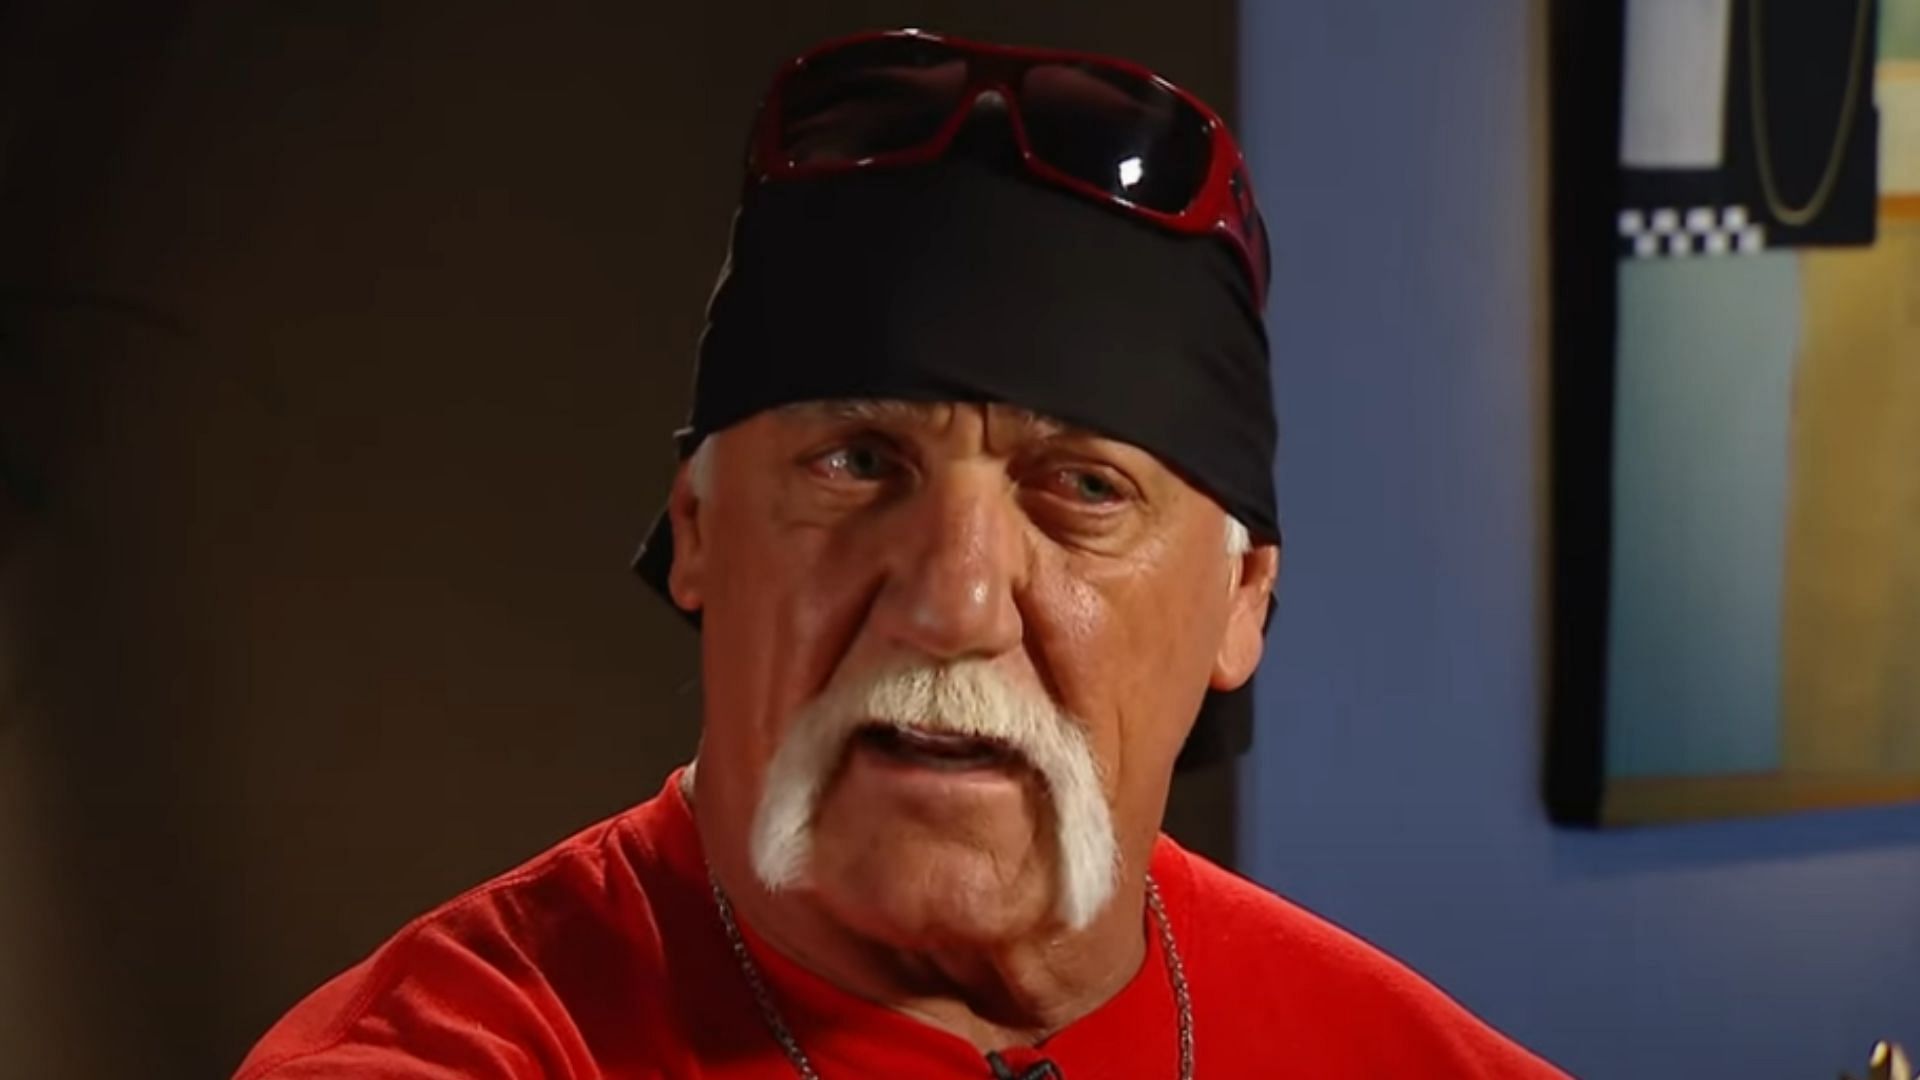 Hulk Hogan was WCW